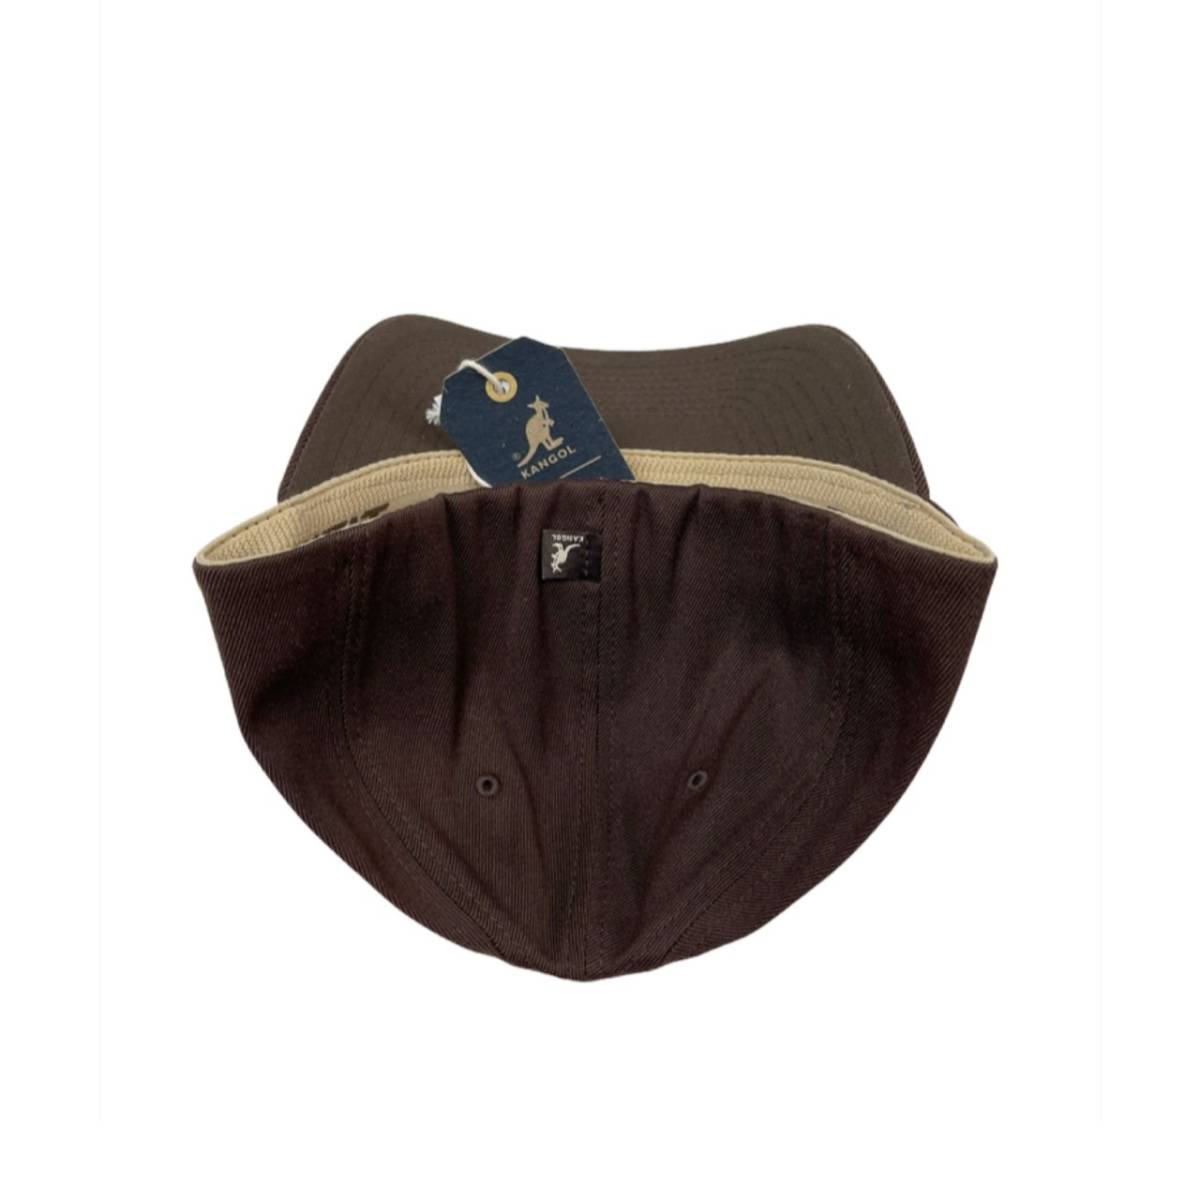 カンゴール キャップ 帽子 8650BC ウール フレックス フィット メンズ レディース ブラウン S/M KANGOL WOOL FLEXFIT BASEBALL 新品